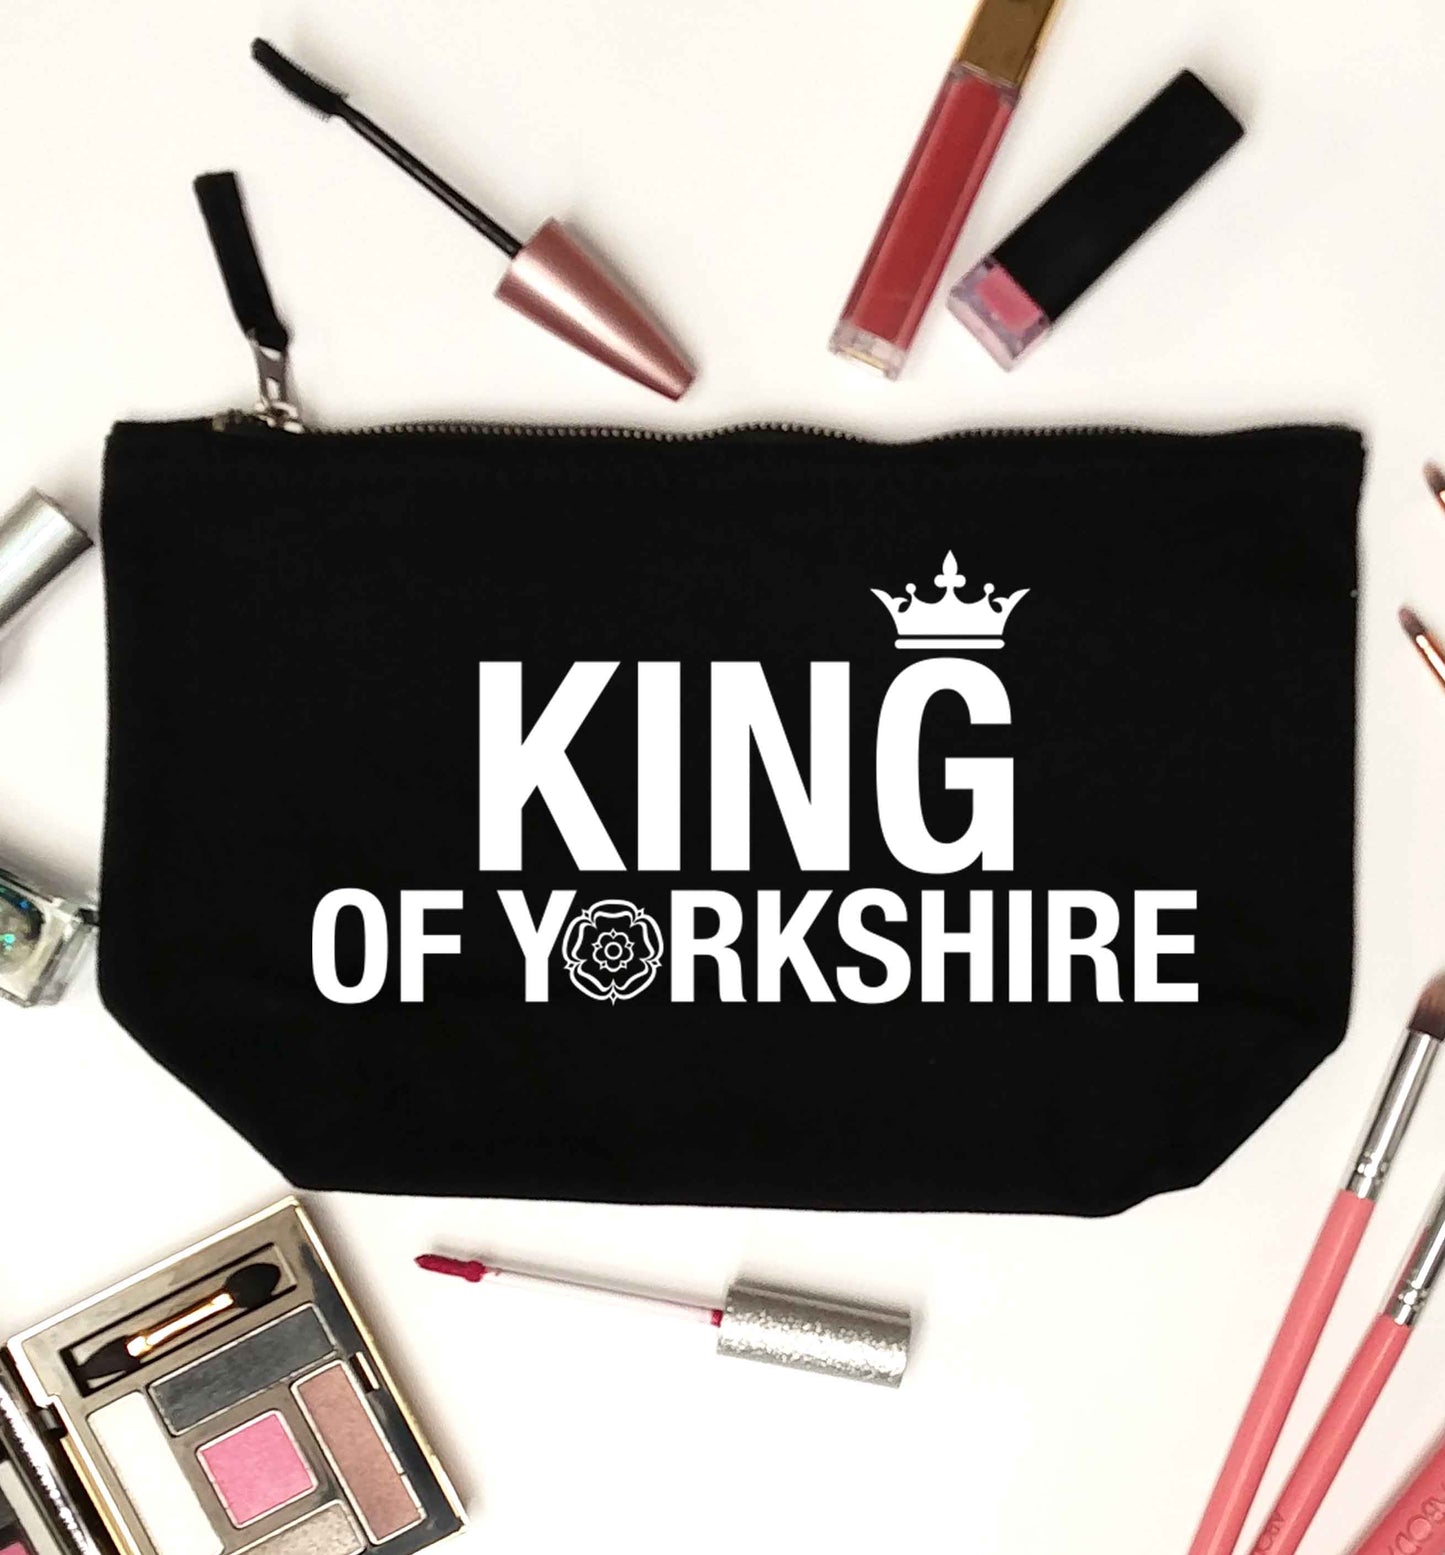 King of Yorkshire black makeup bag